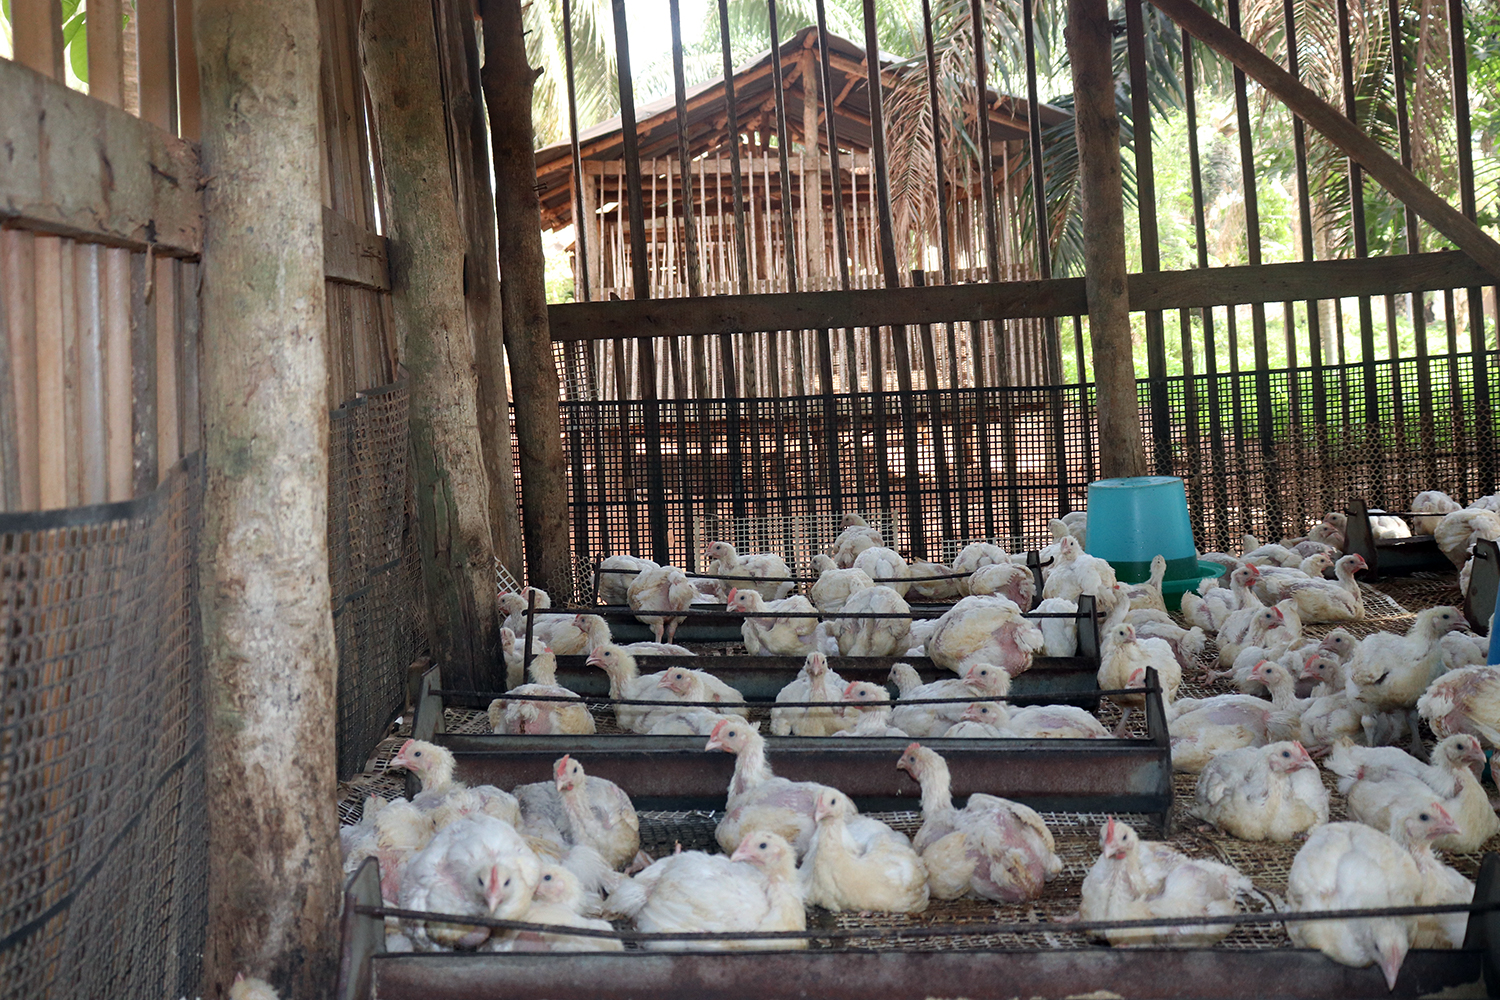 Songhaï développe aussi une production animale, comme la filière avicole où rien n’est jeté et tout est réutilisé. 